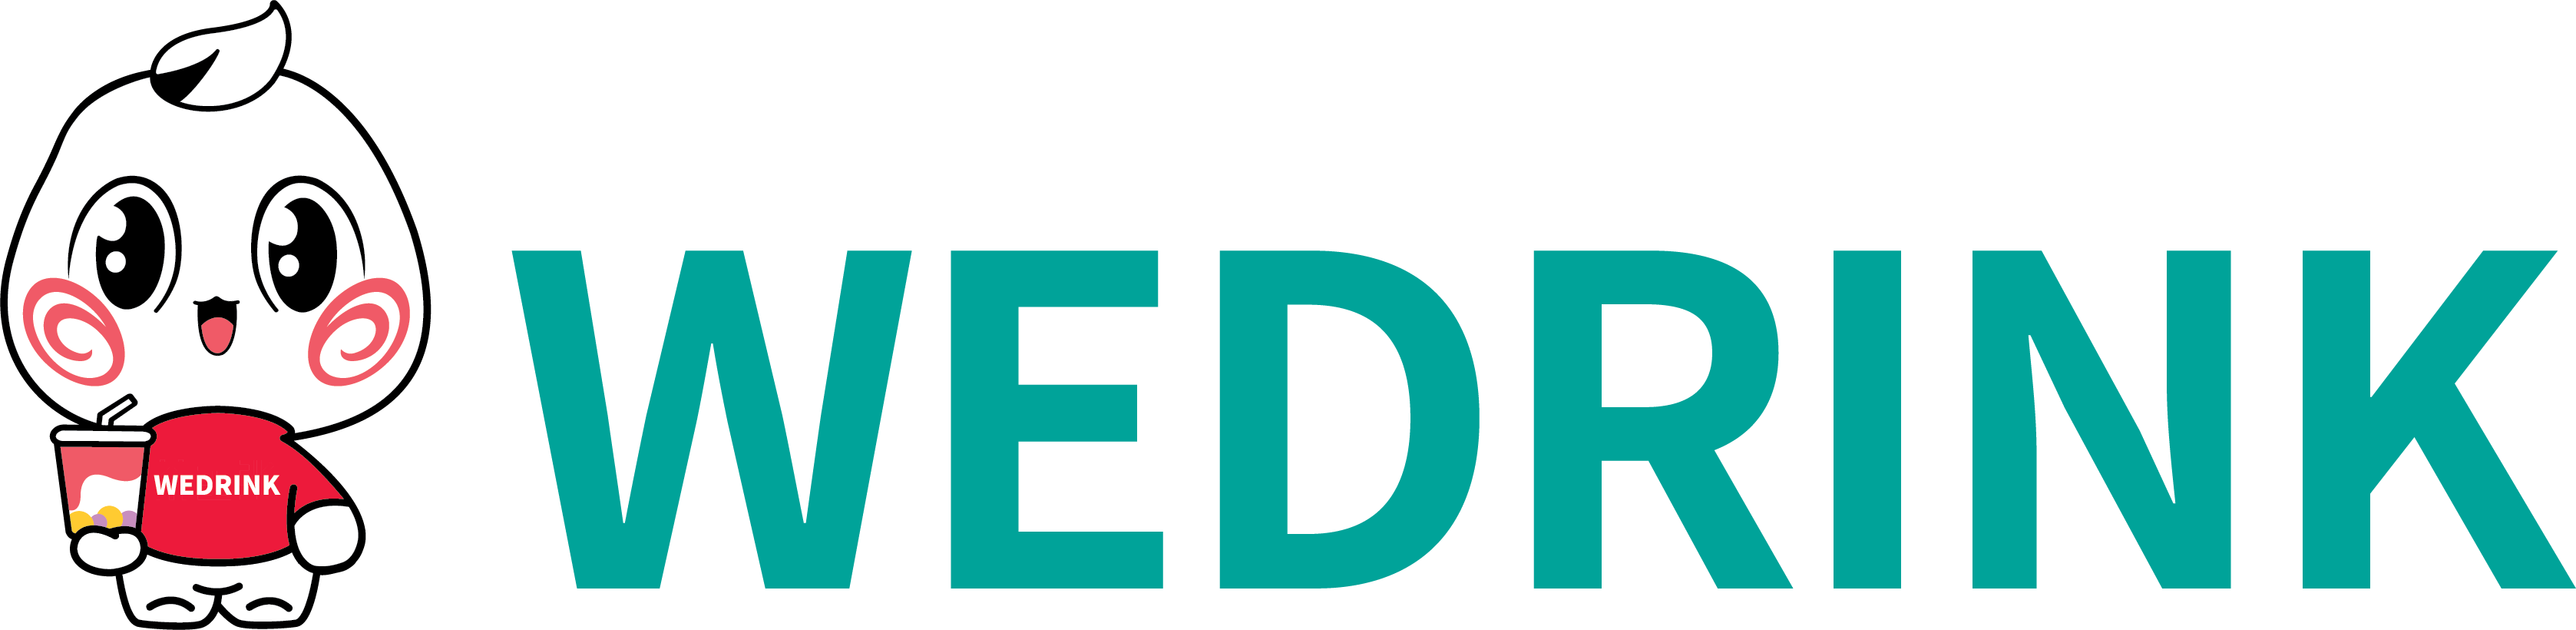 wedrink logo